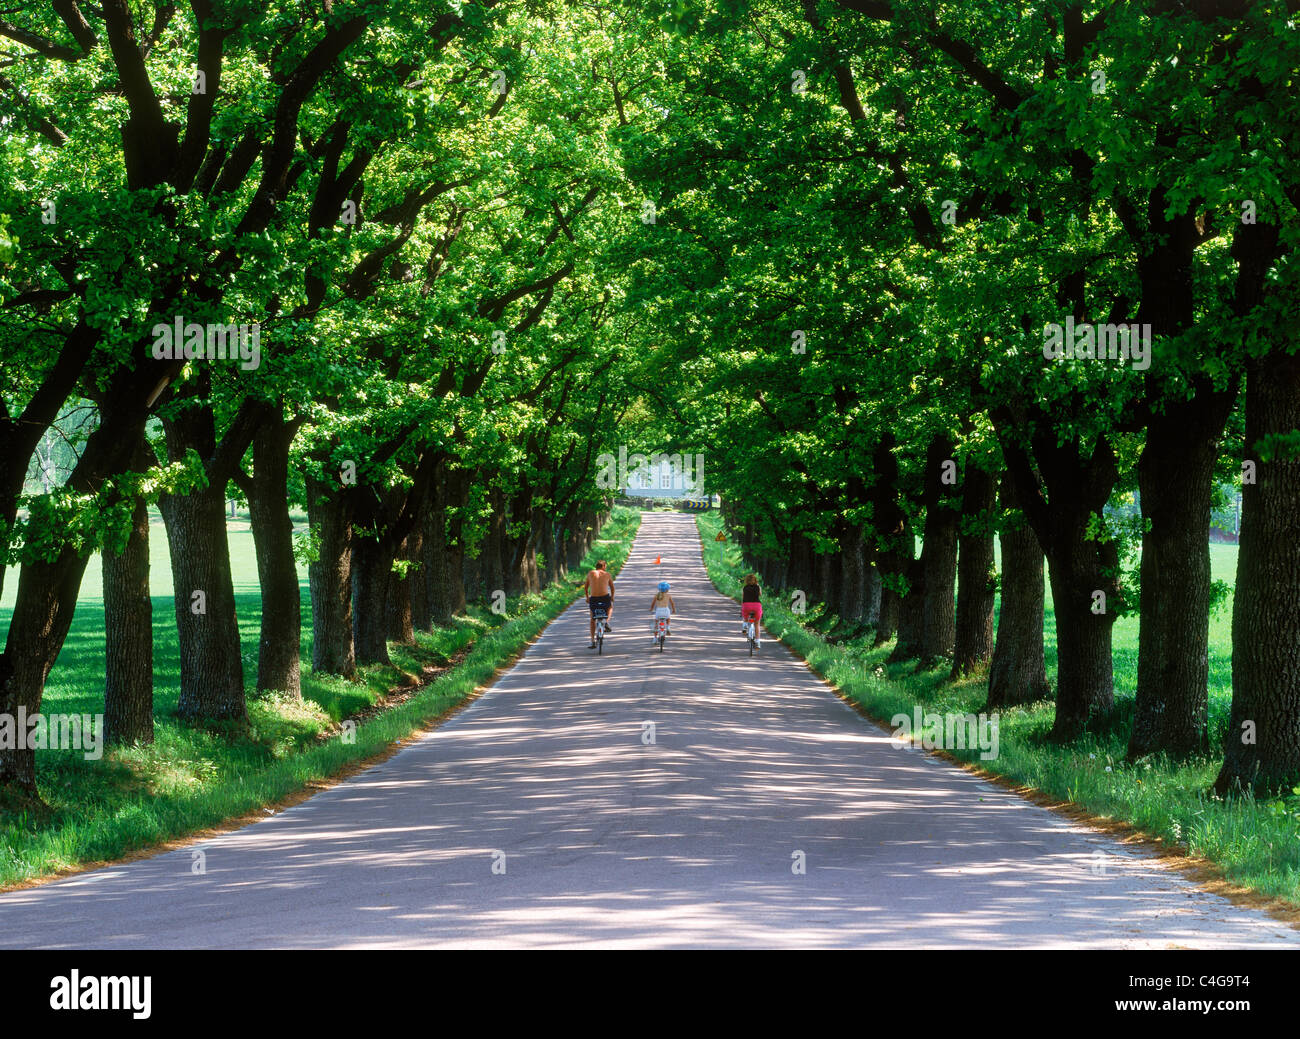 Famille cycliste sur une route de campagne bordée d'arbres dans les régions rurales de la Suède pendant les mois d'été Banque D'Images